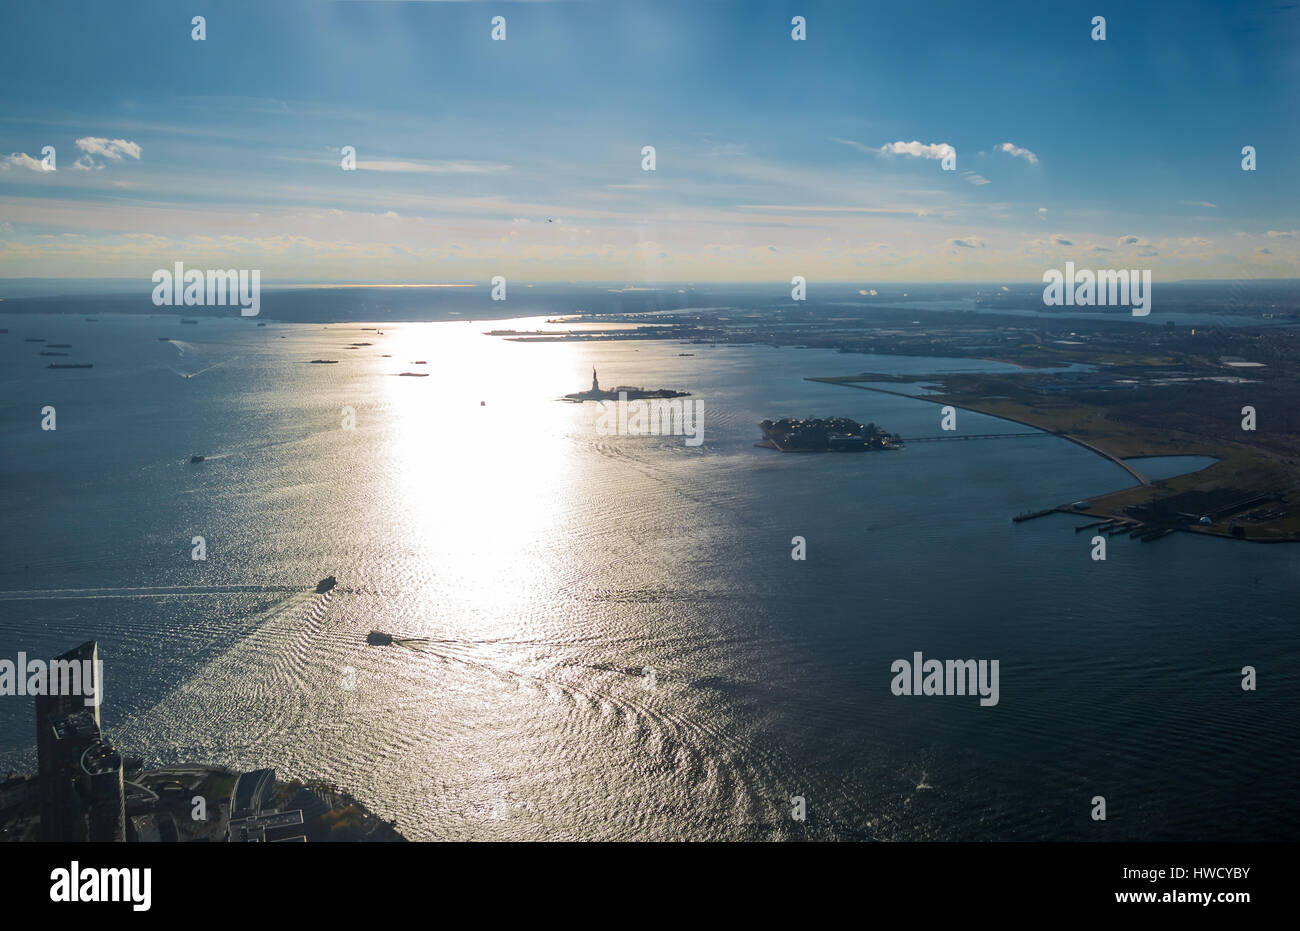 Vista aerea della parte superiore di New York Bay con Liberty Island e la Statua della Libertà - New York, Stati Uniti d'America Foto Stock